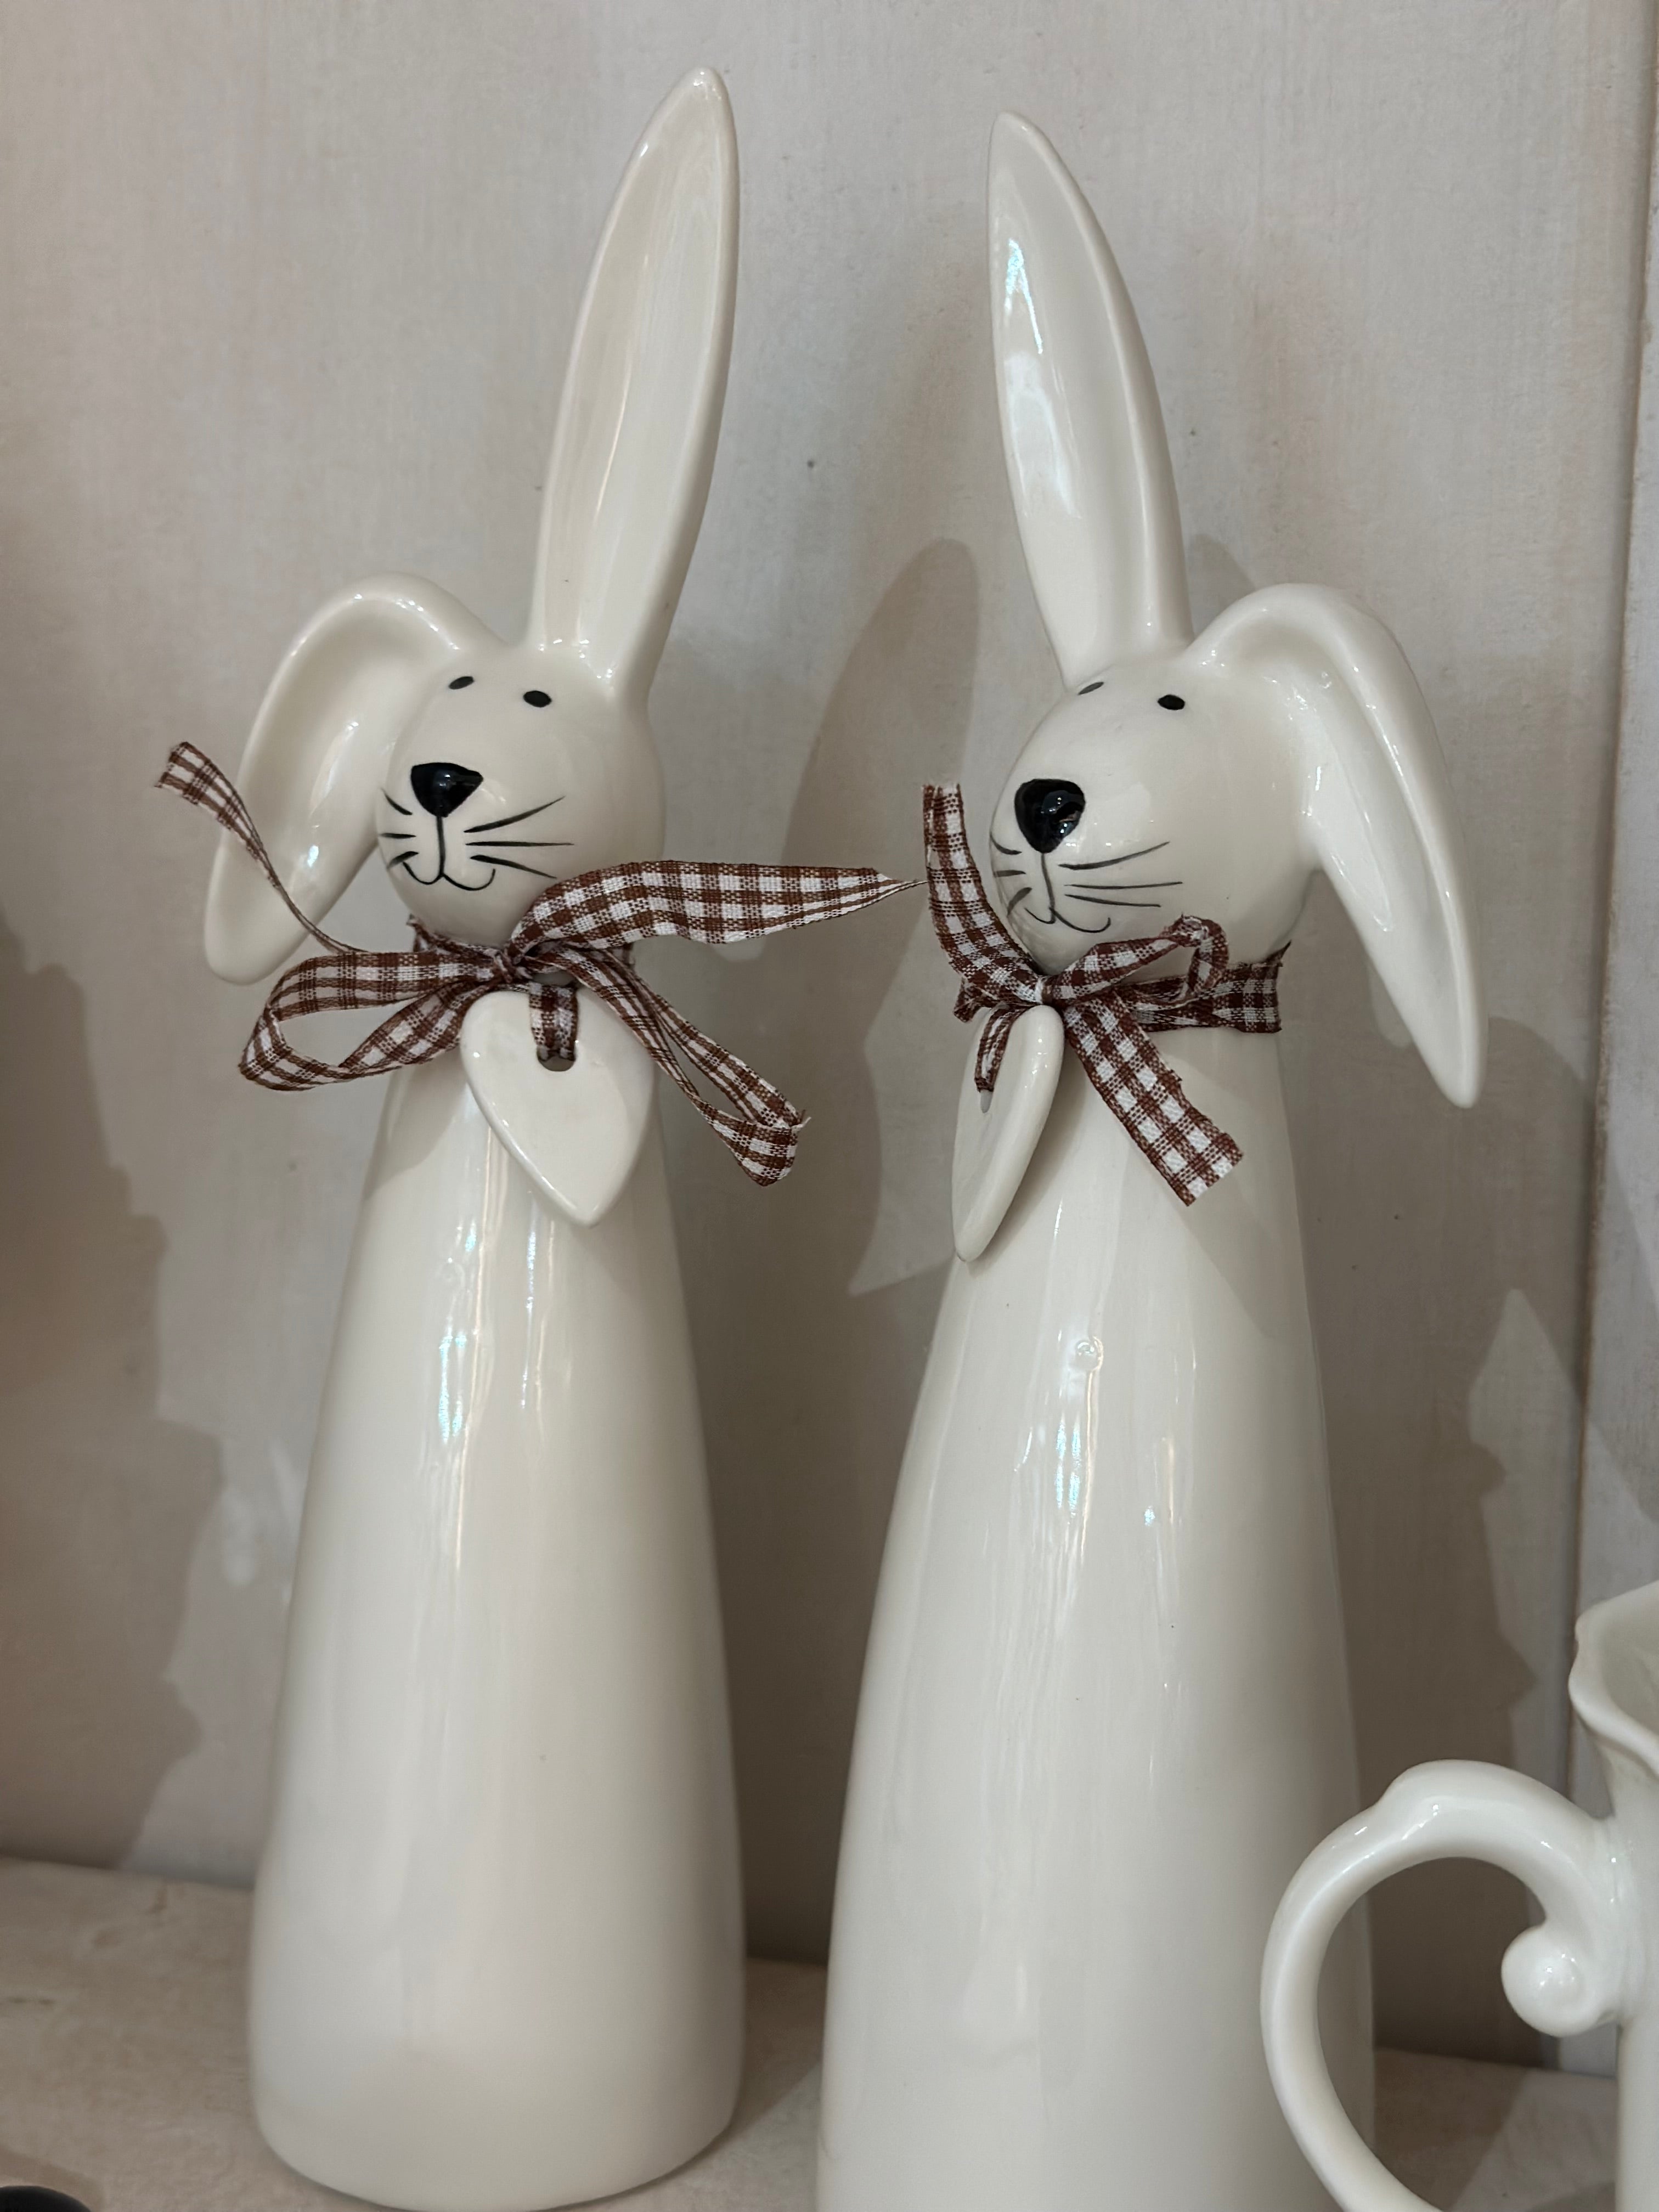 Ceramic Rabbit Ornament